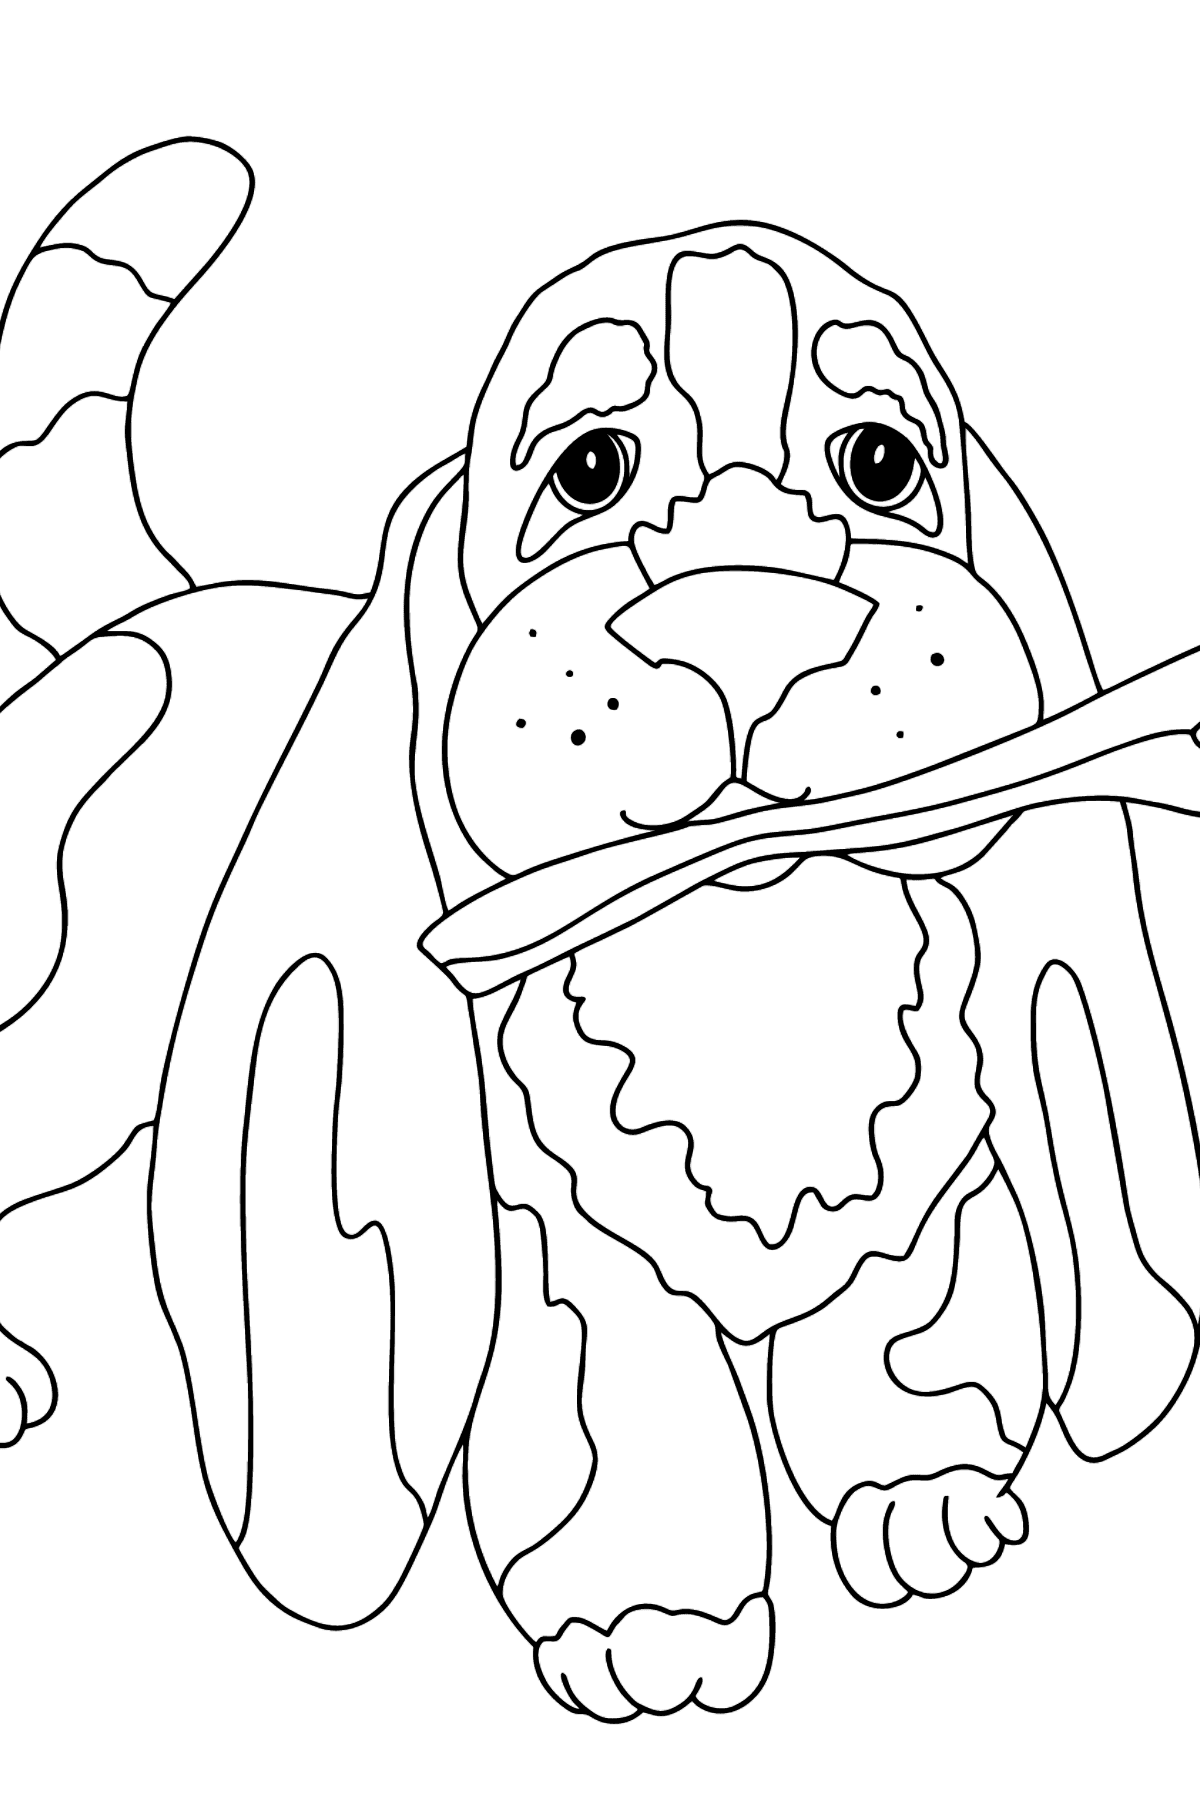 Dibujo para Colorear - Un Perro está Jugando con un Palo - Dibujos para Colorear para Niños